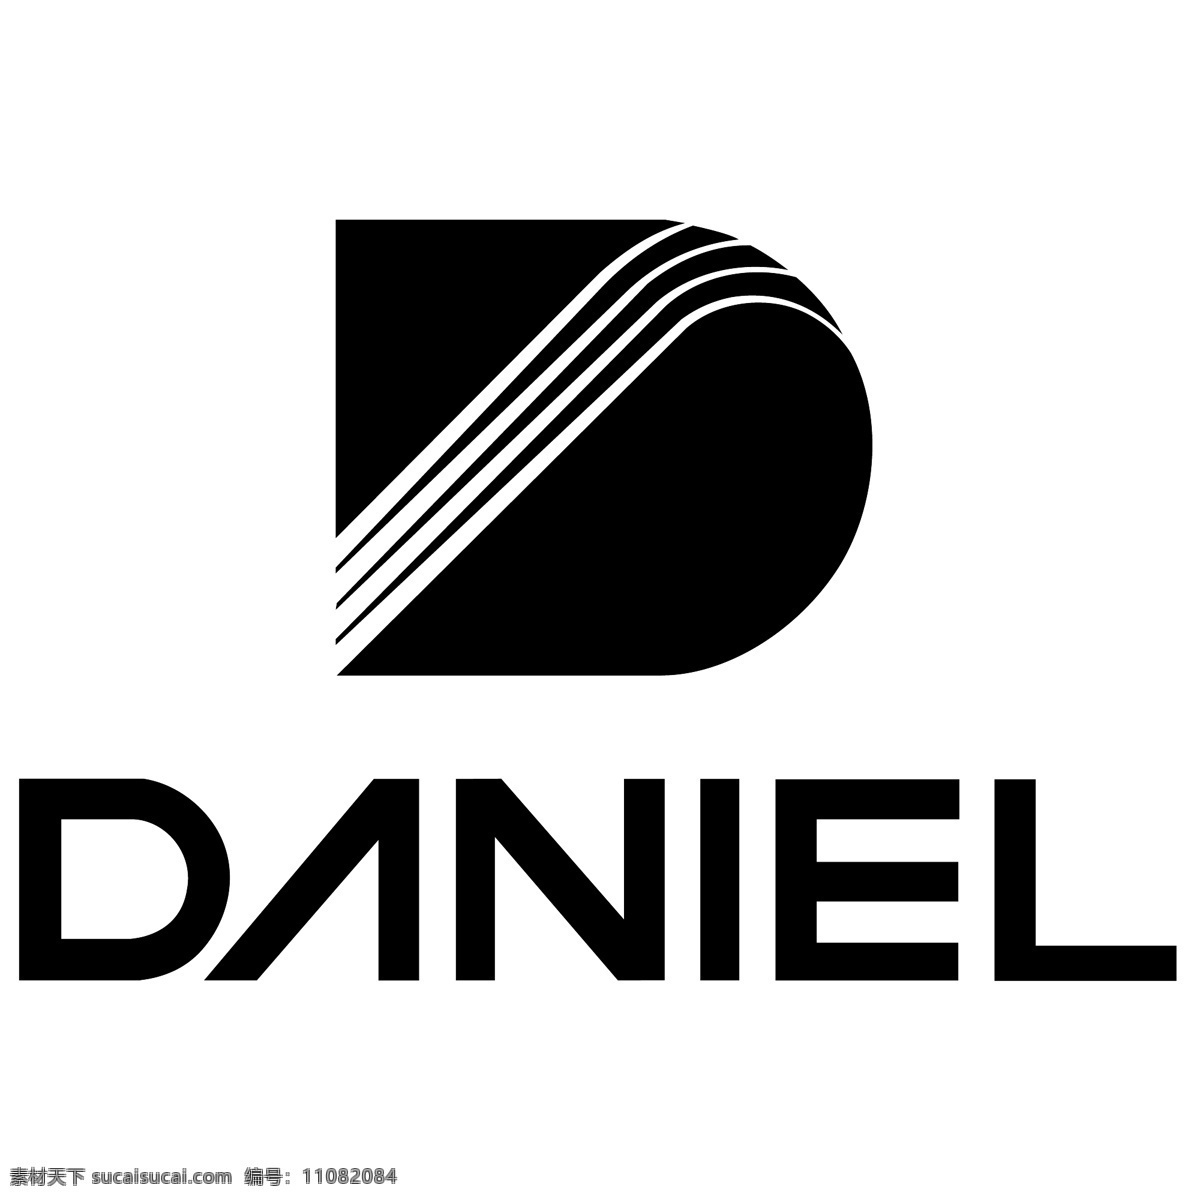 丹尼尔 自由 标志 标识 psd源文件 logo设计